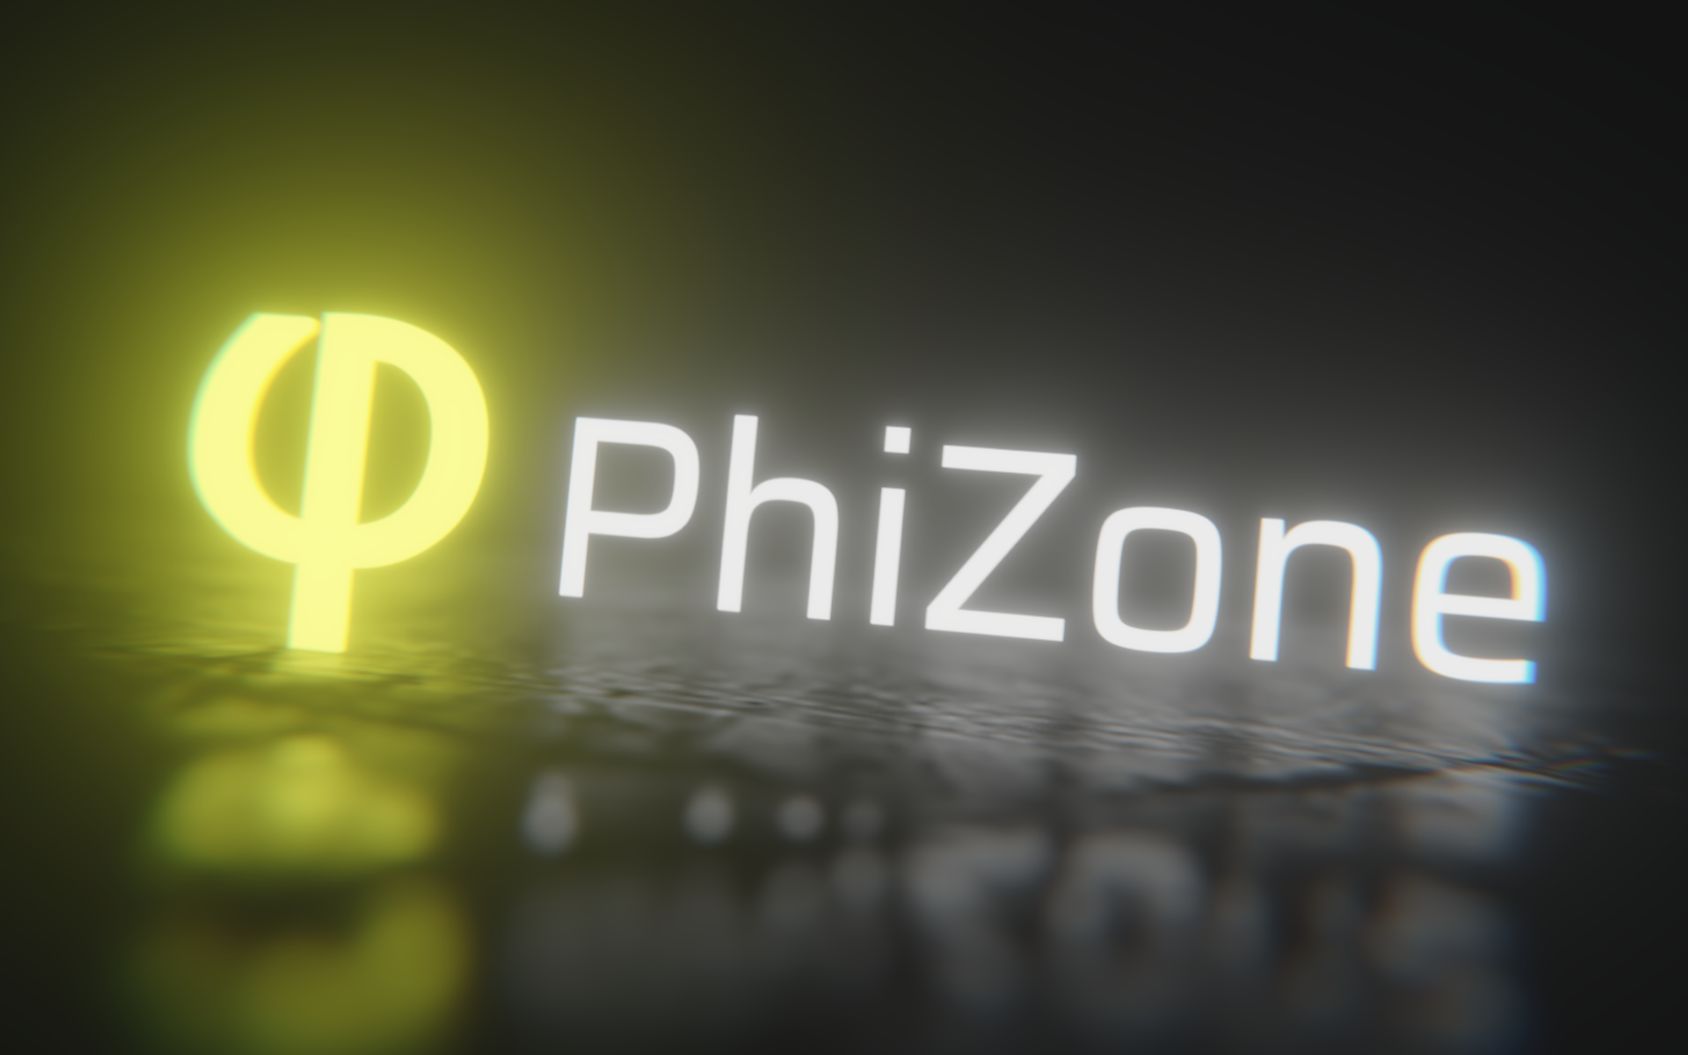 PhiZone v1.0